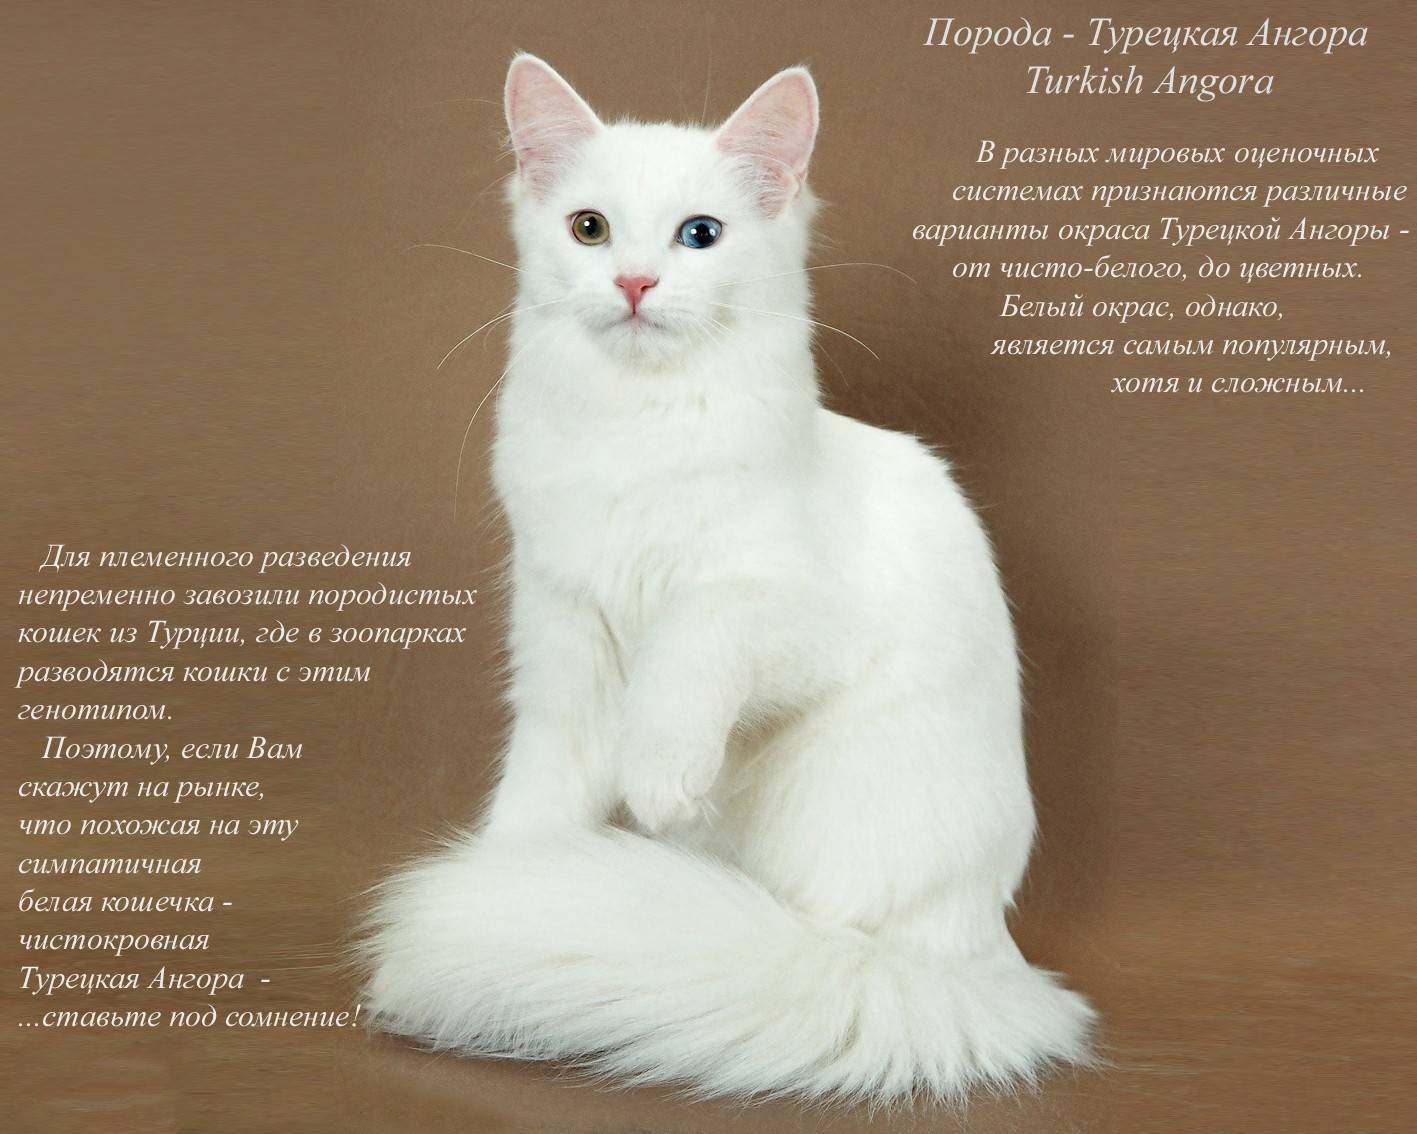 Турецкая ангора: описание внешнего вида и характера породы кошек, уход и содержание, кормление